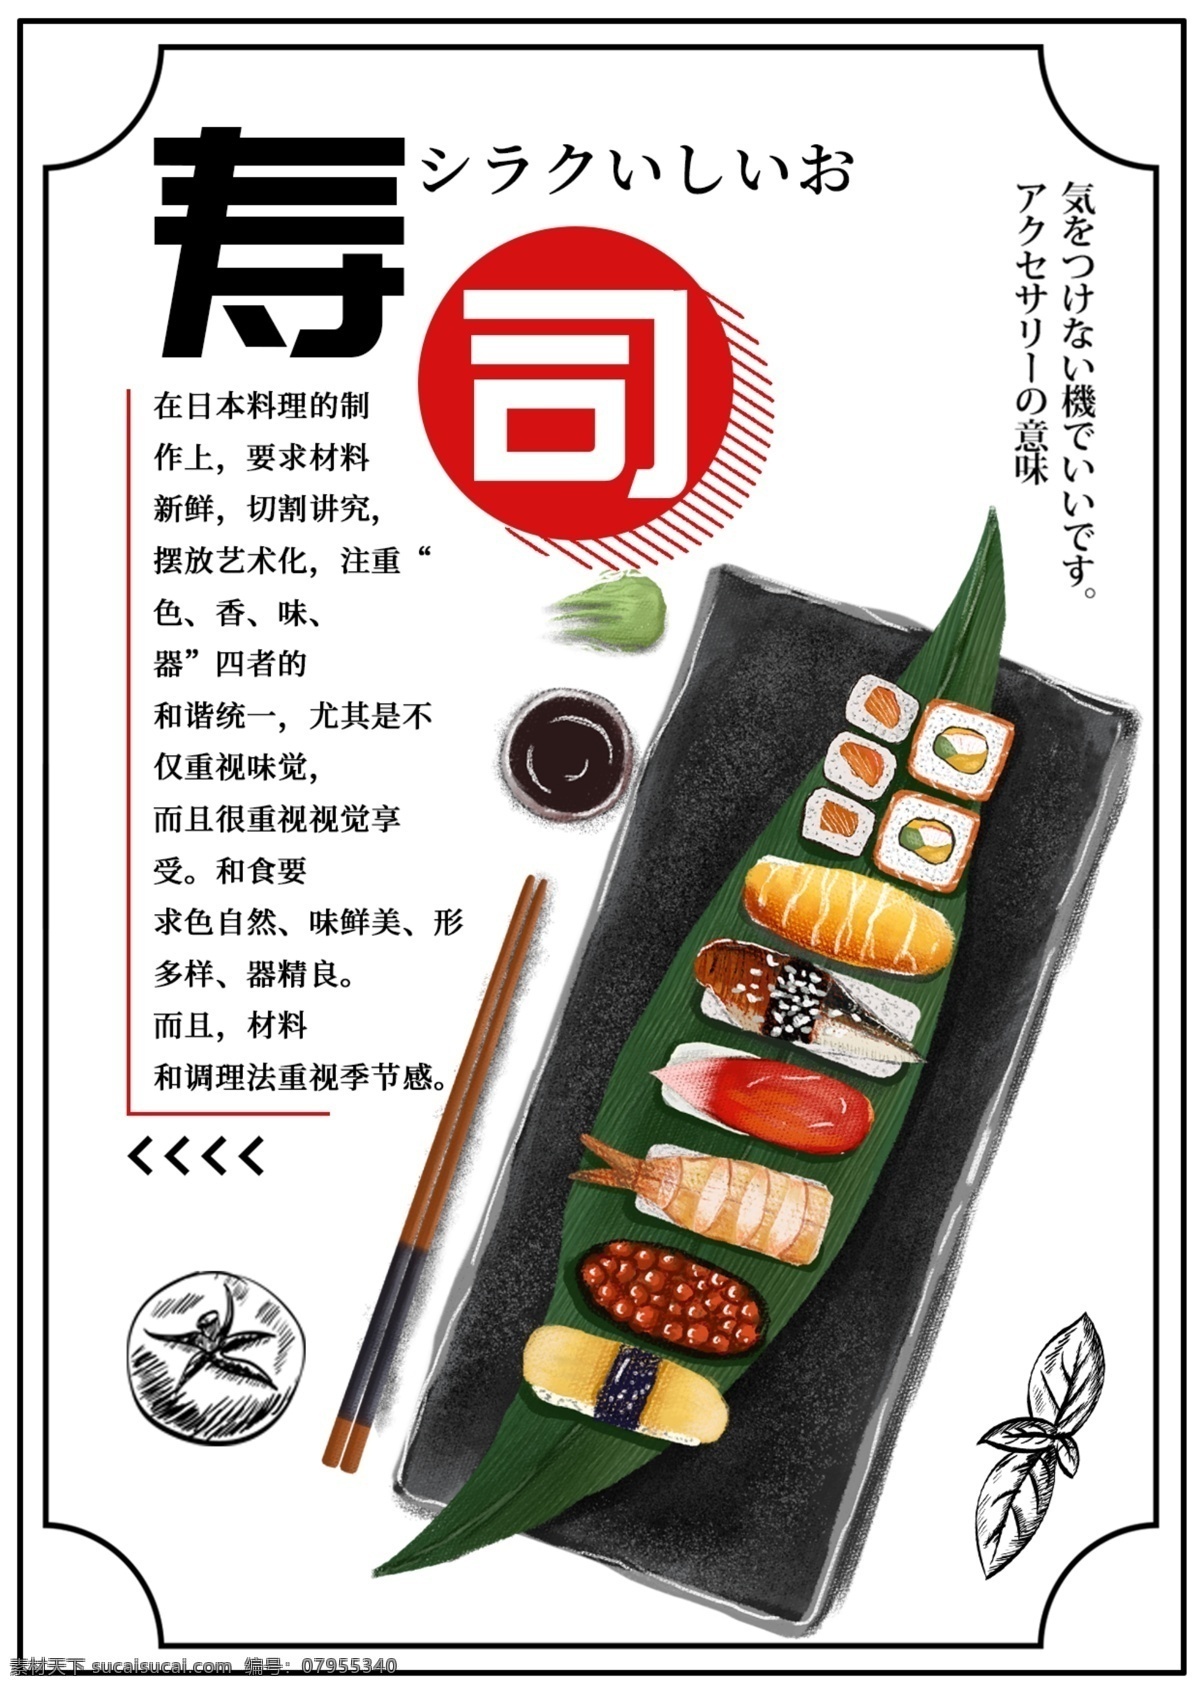 白色 简约 大气 美味 寿司 菜单 菜谱 日本 美食 免费 模板